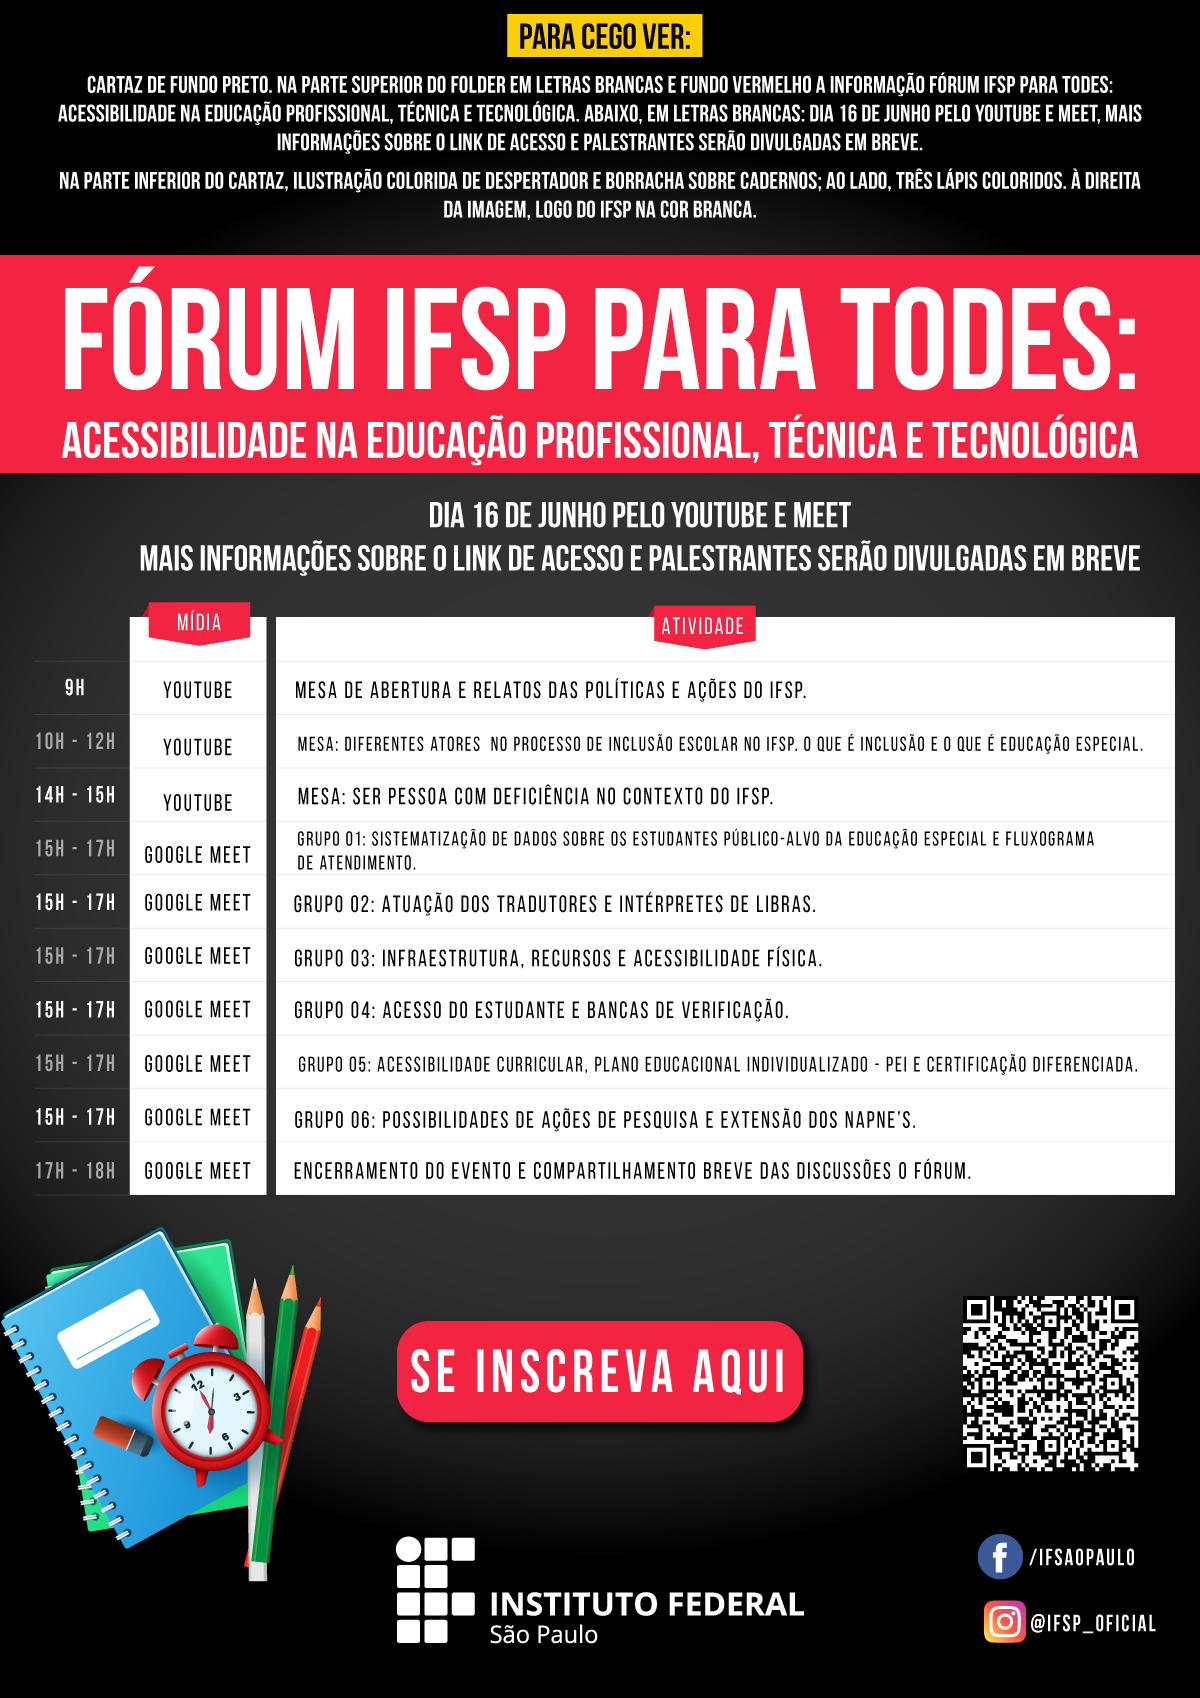 FORUM IFSP 2